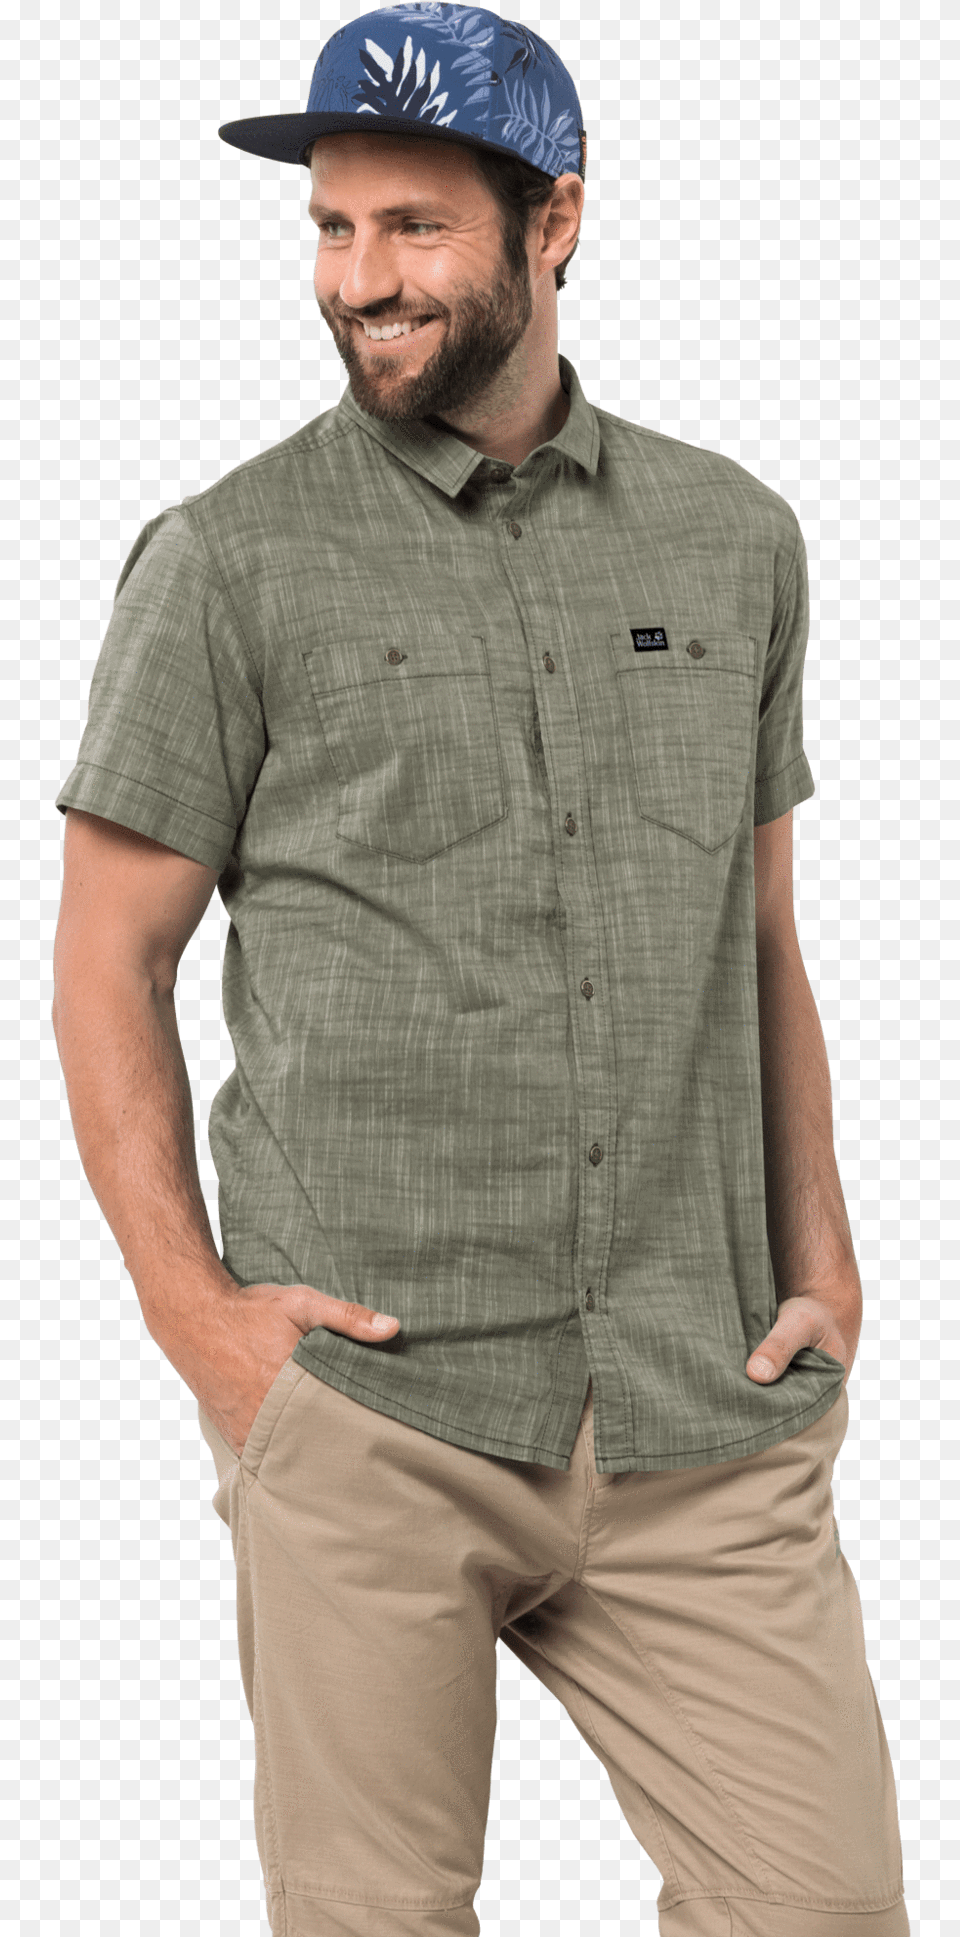 Men S Emerald Lake Shirt Jack Wolfskin Emerald Lake Shirt M, Baseball Cap, Cap, Clothing, Hat Free Transparent Png